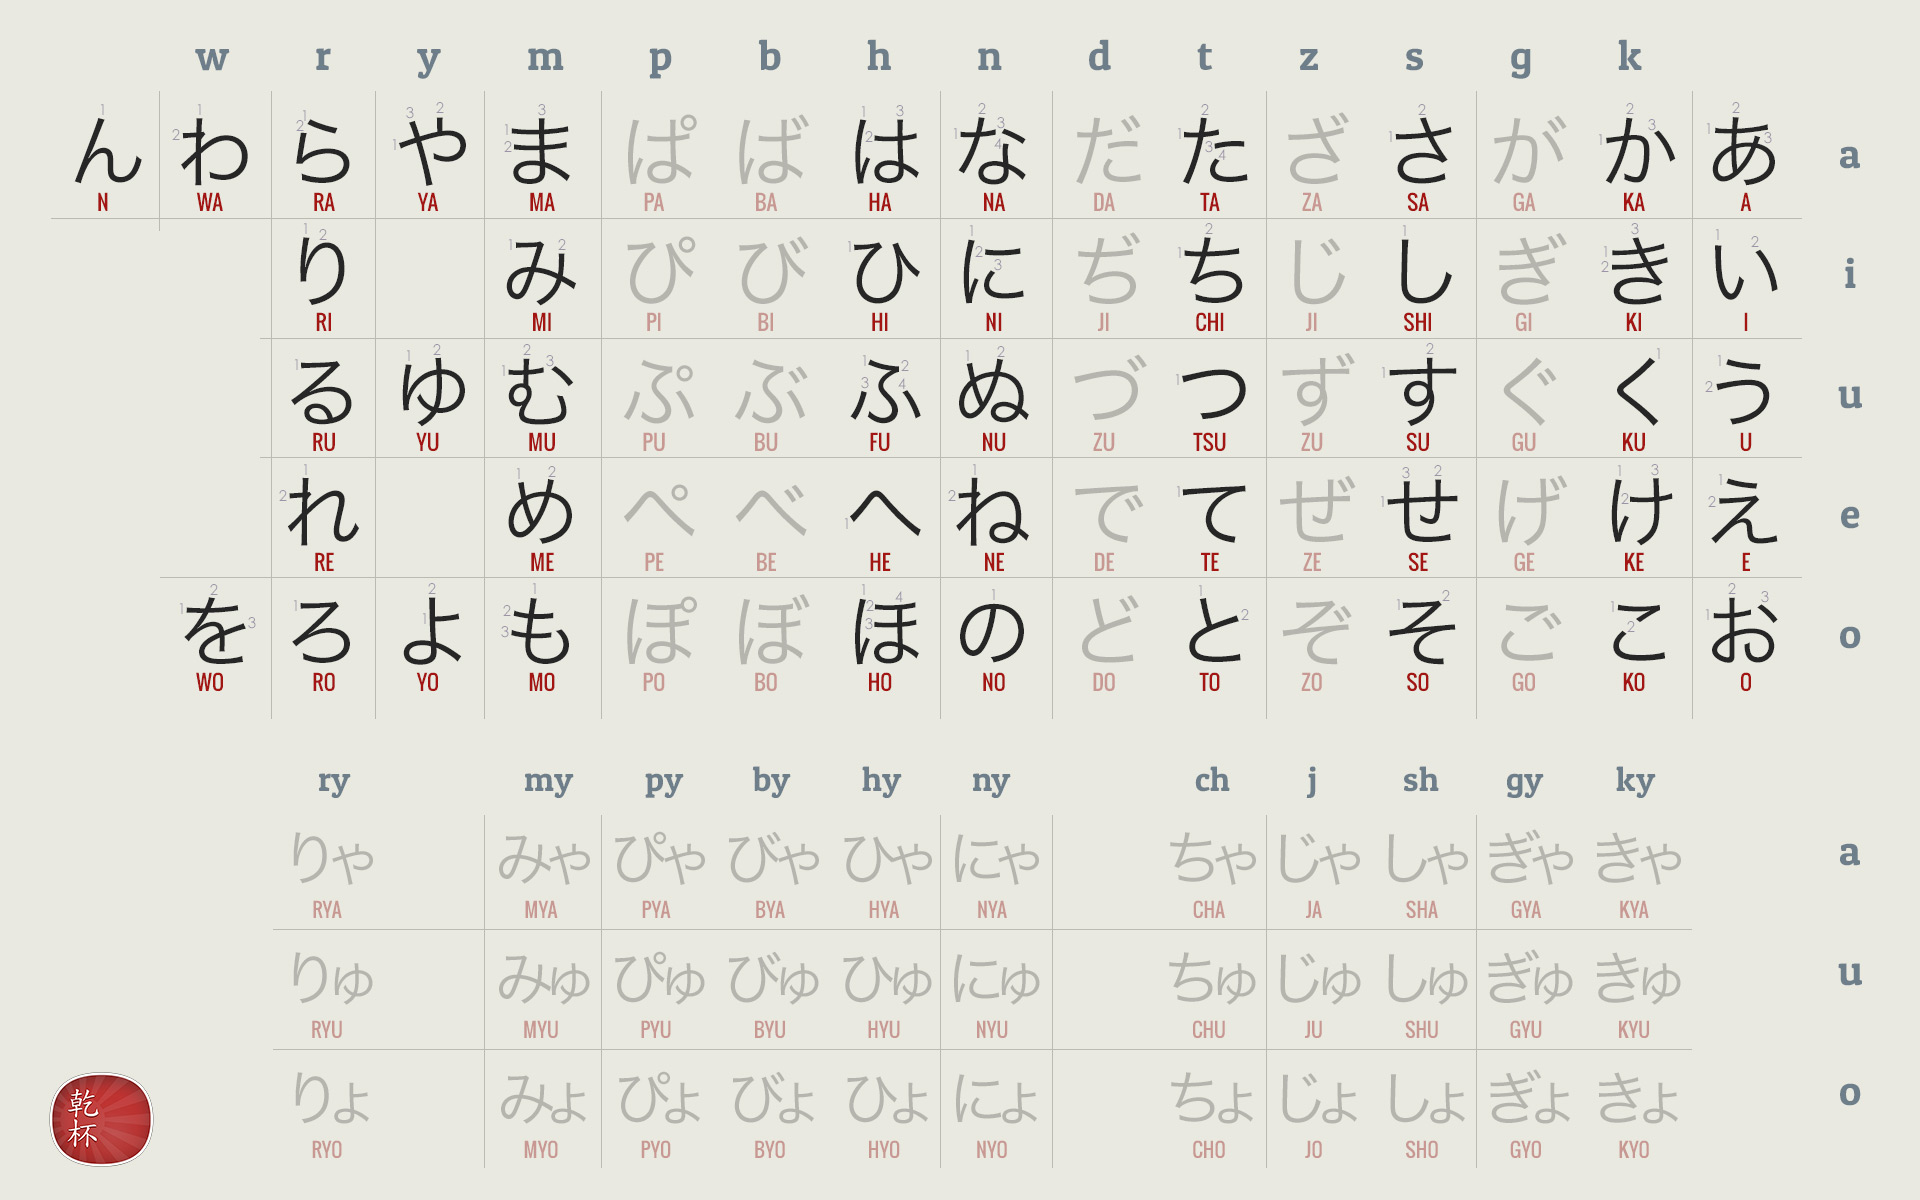 Learn Japanese Kana in 3 days